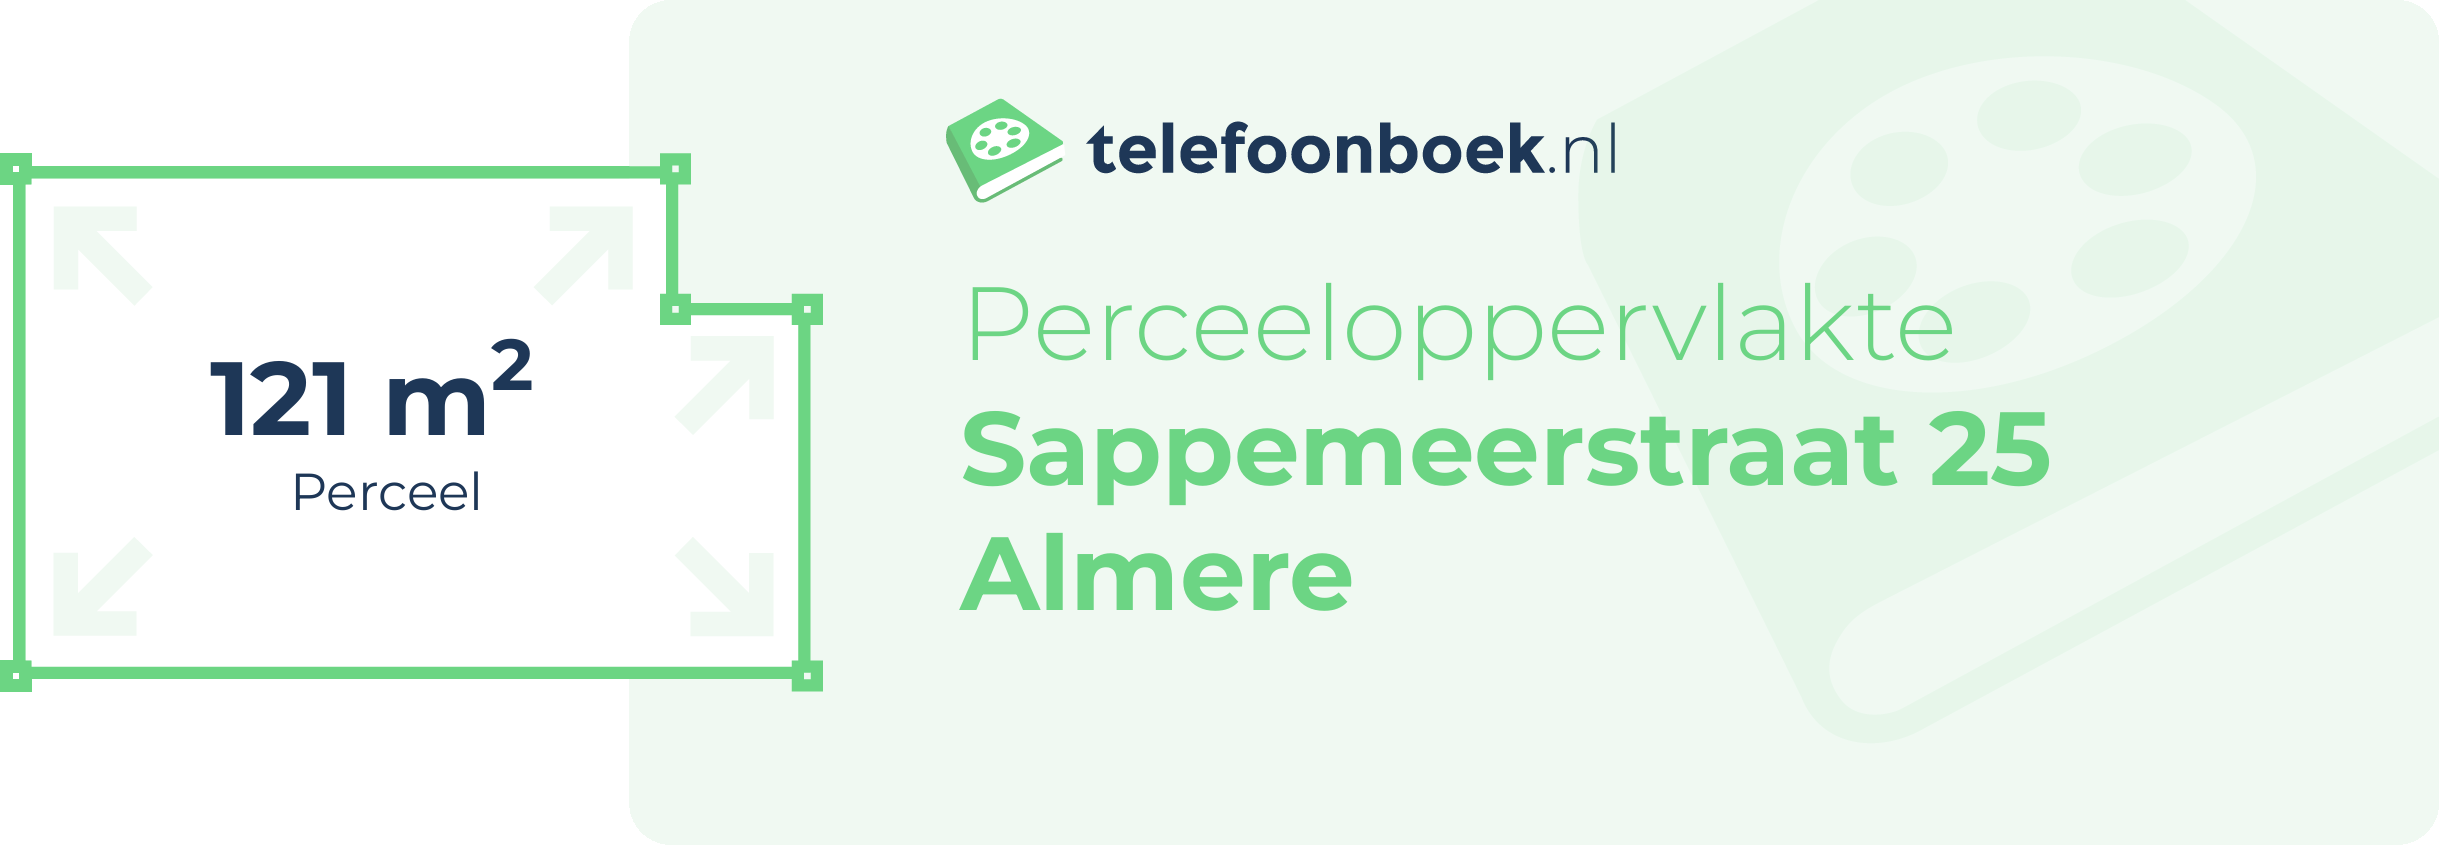 Perceeloppervlakte Sappemeerstraat 25 Almere